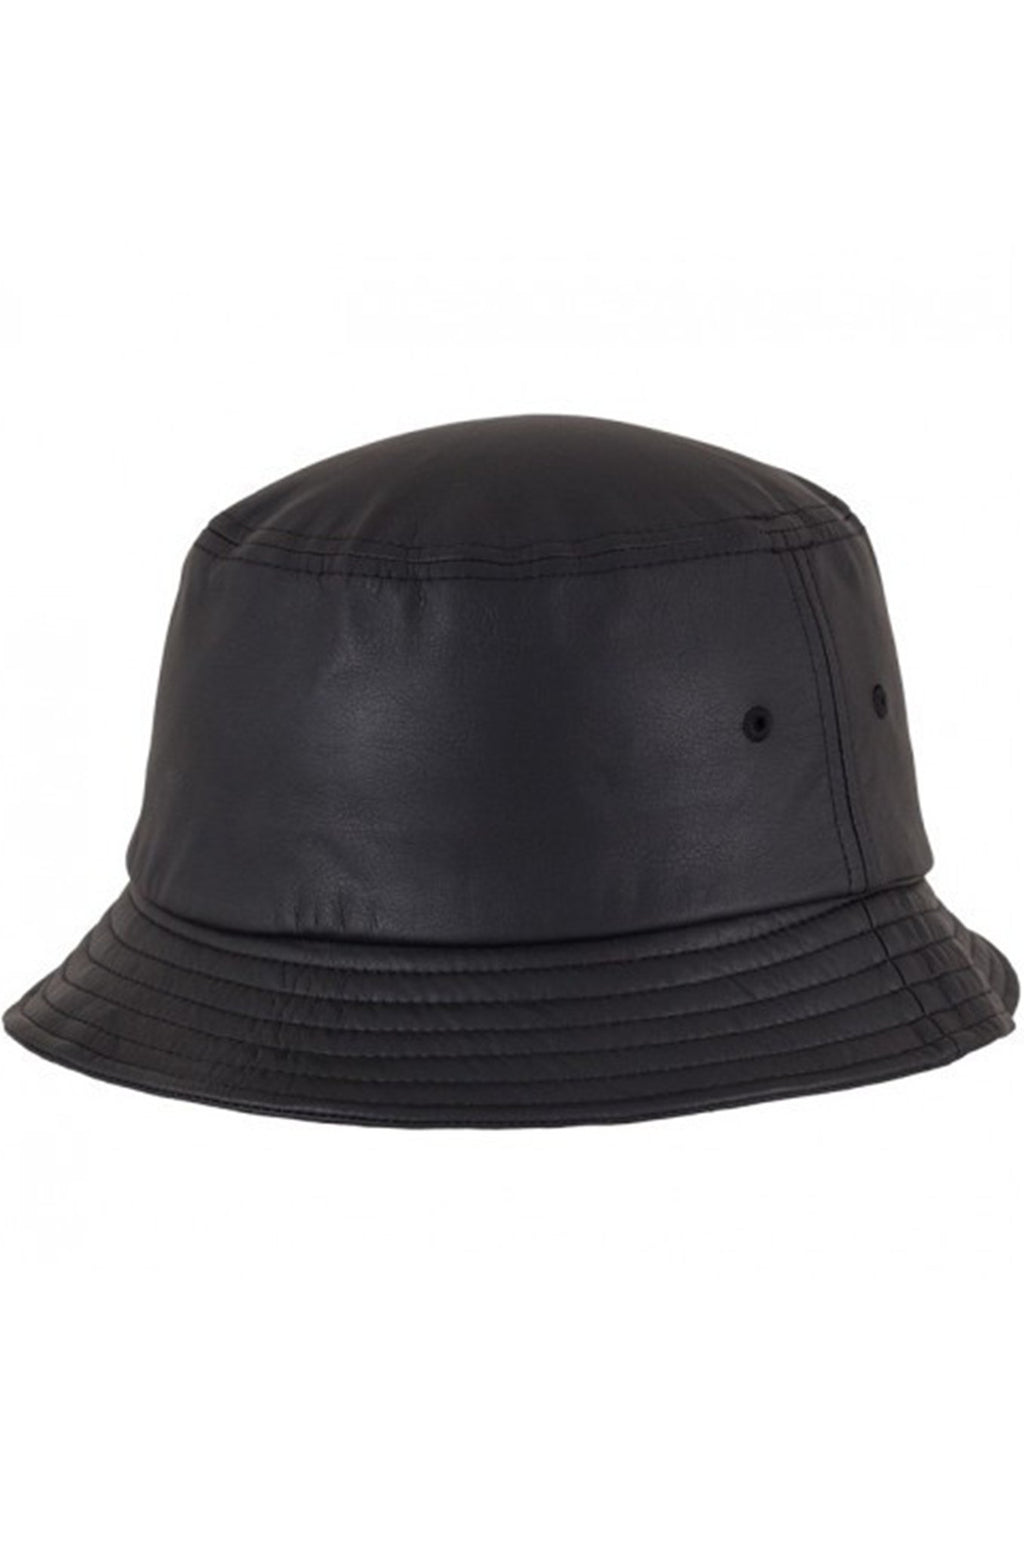 Καπέλο κουβά - Faux Leather Black